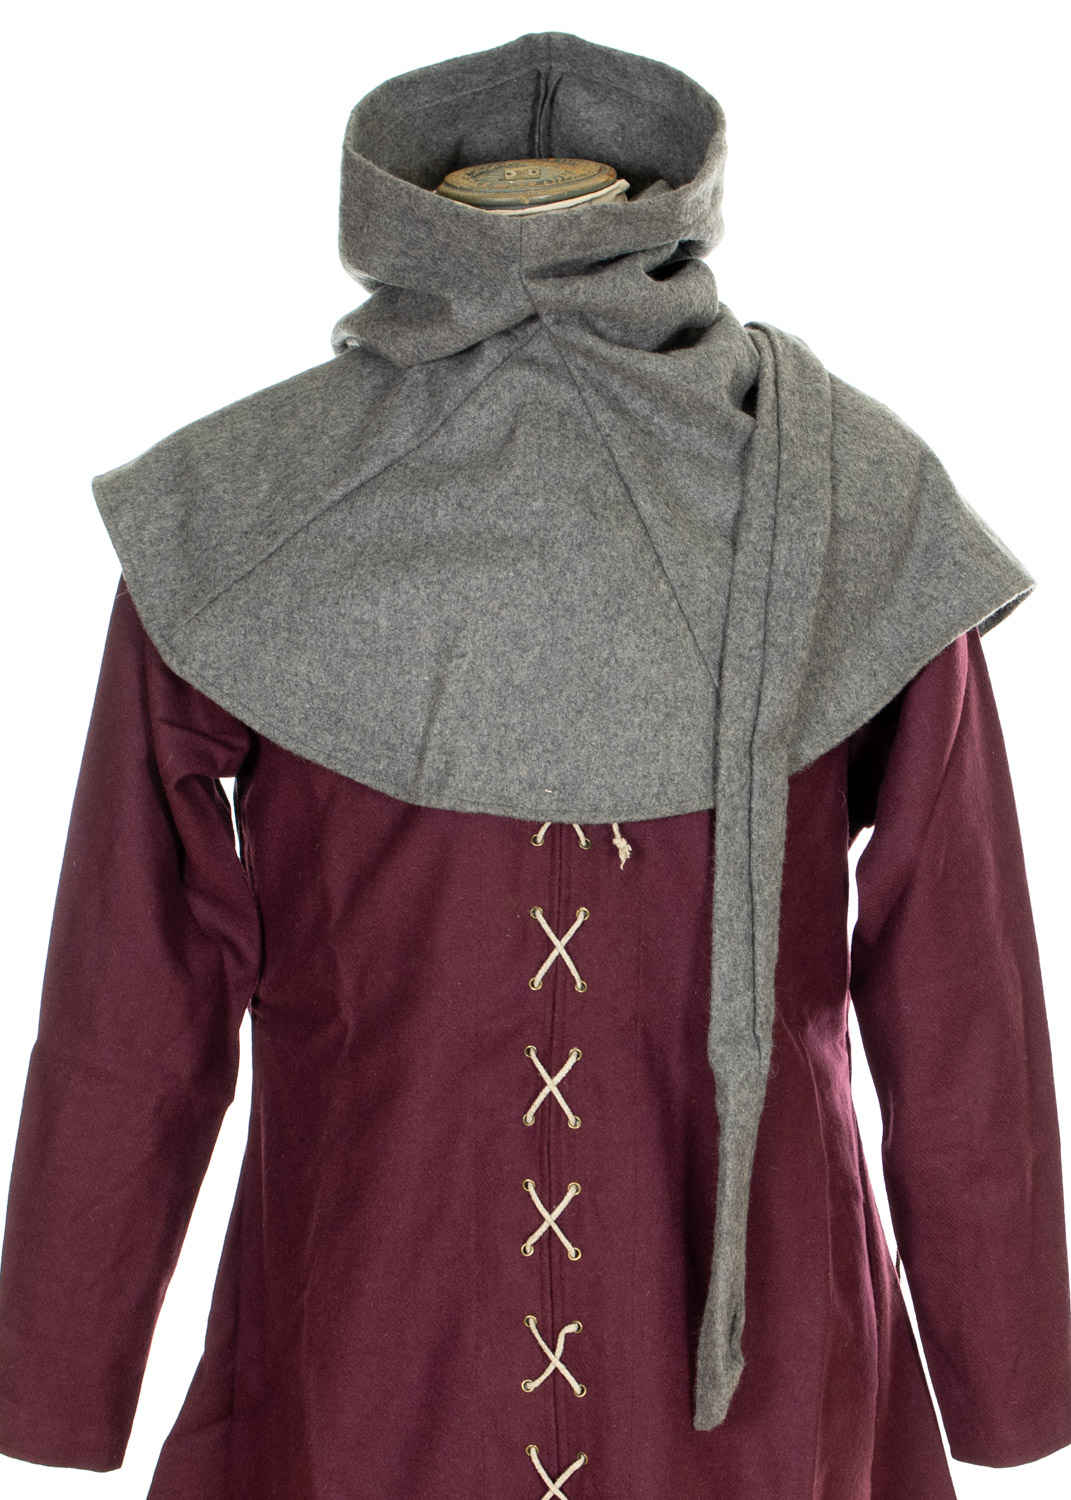 medieval lirirpiped hood in wool